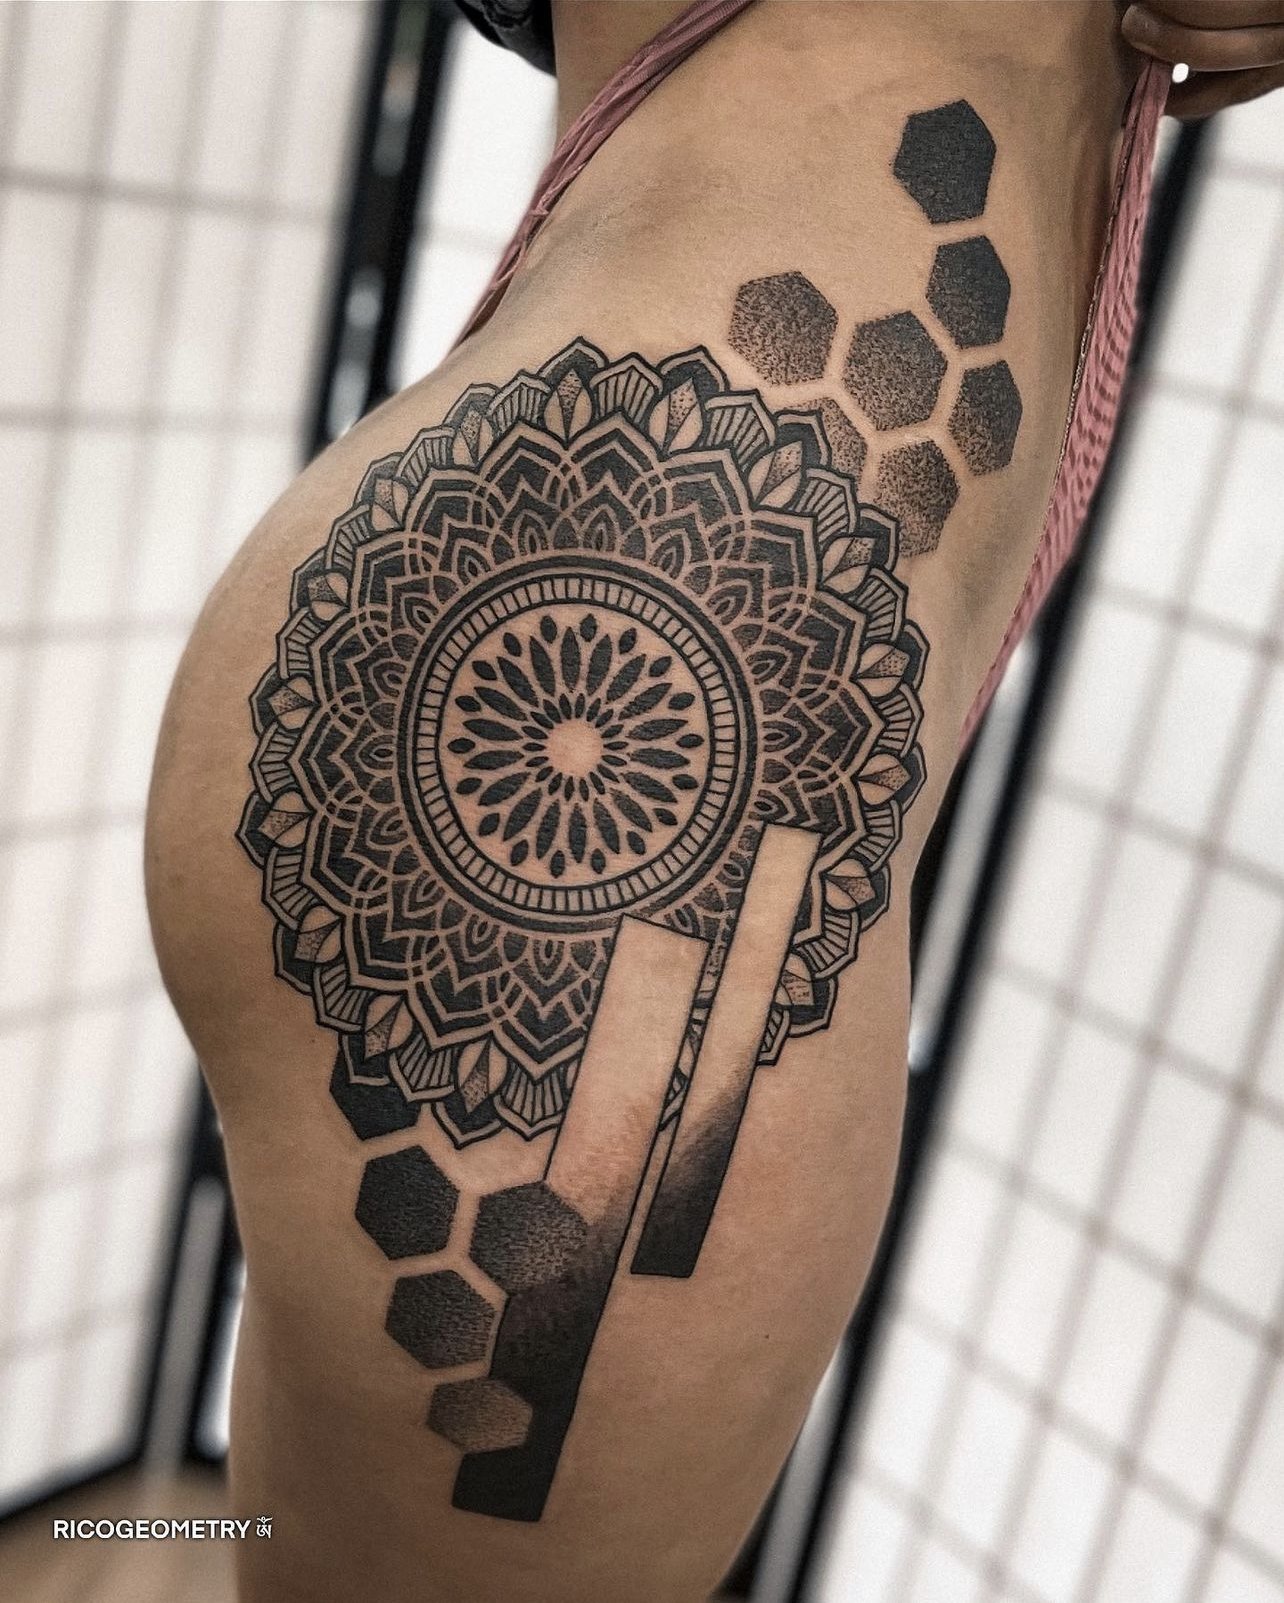 Geometric Tattoos - Cloak and Dagger Tattoo London